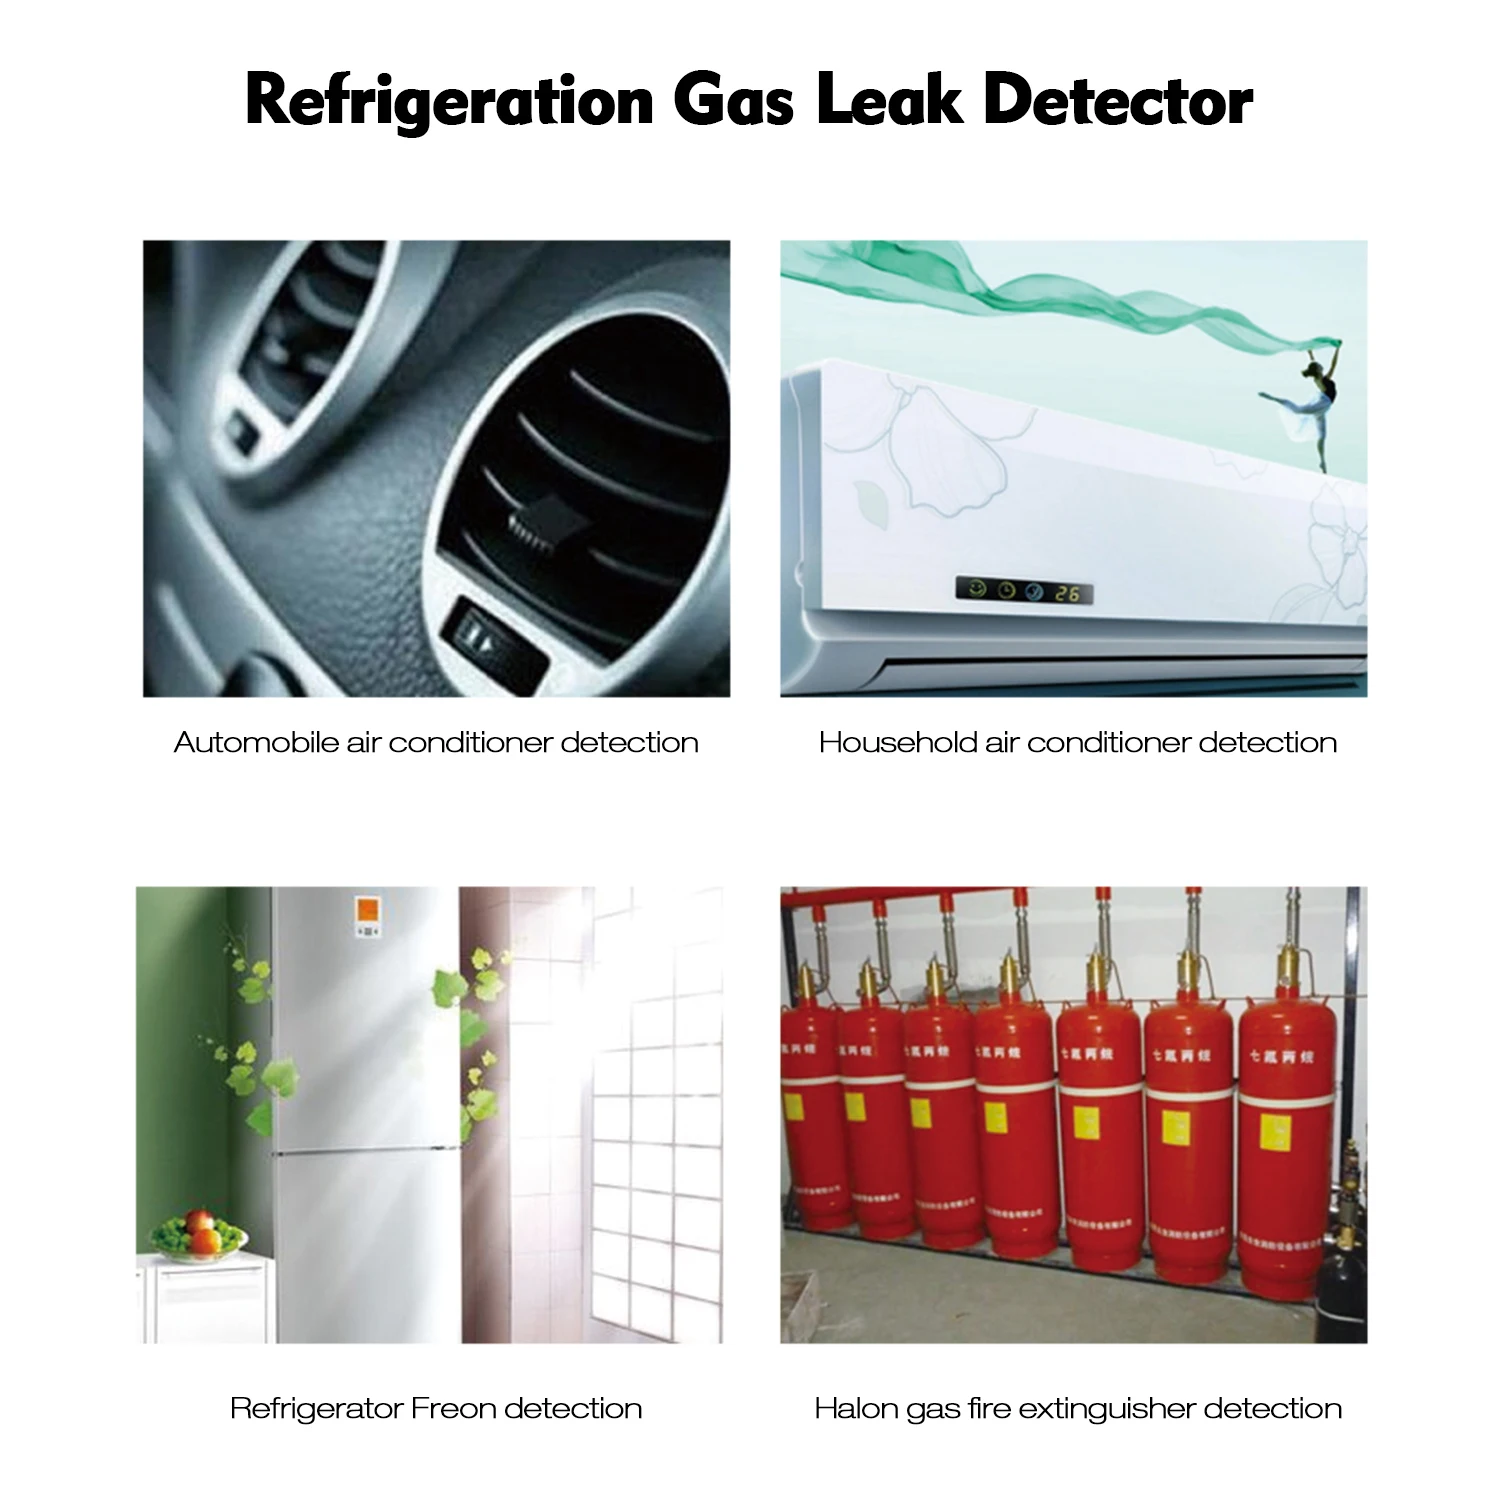 Холодильный детектор утечки газа фреон тестер утечки галогенный детектор утечки Checker с высокой чувствительностью для автомобильного кондиционера